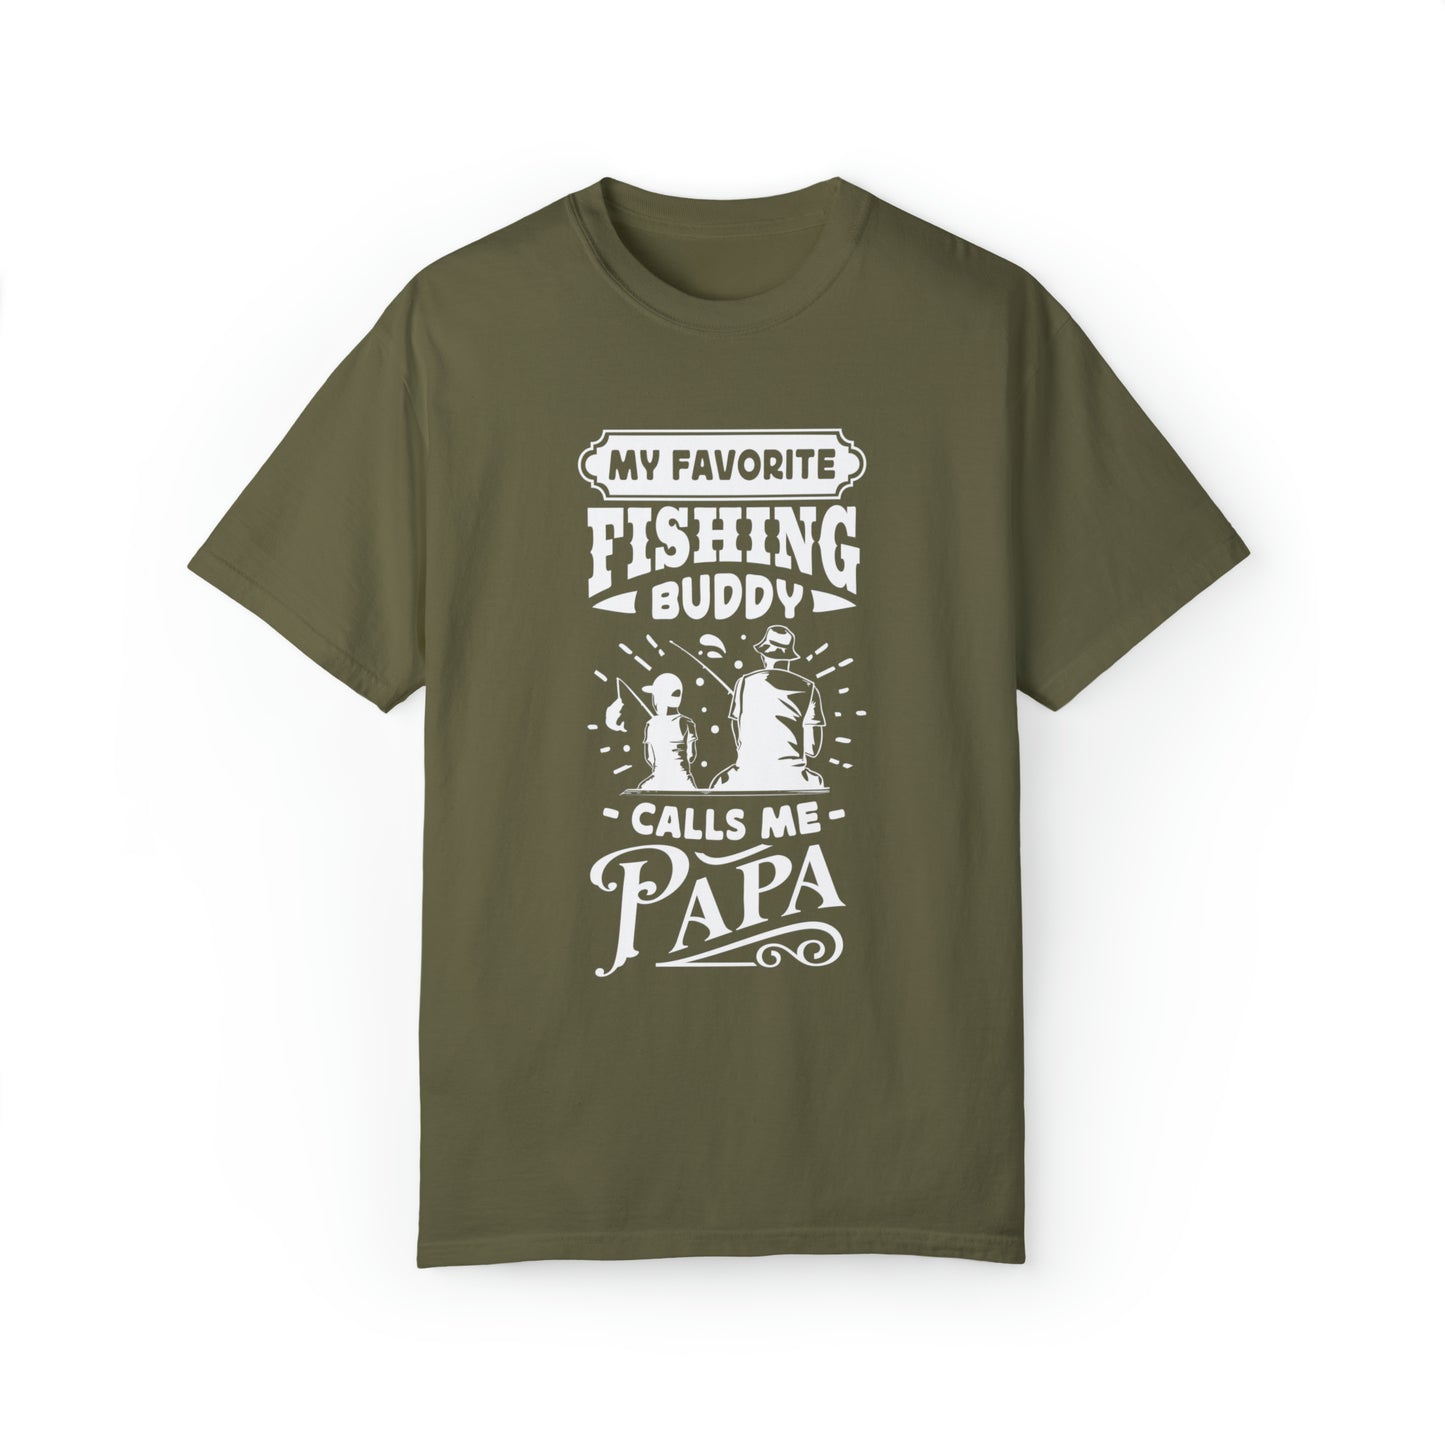 "Cherished Fishing Companion: My Little One Calls Me Papa" T-Shirt